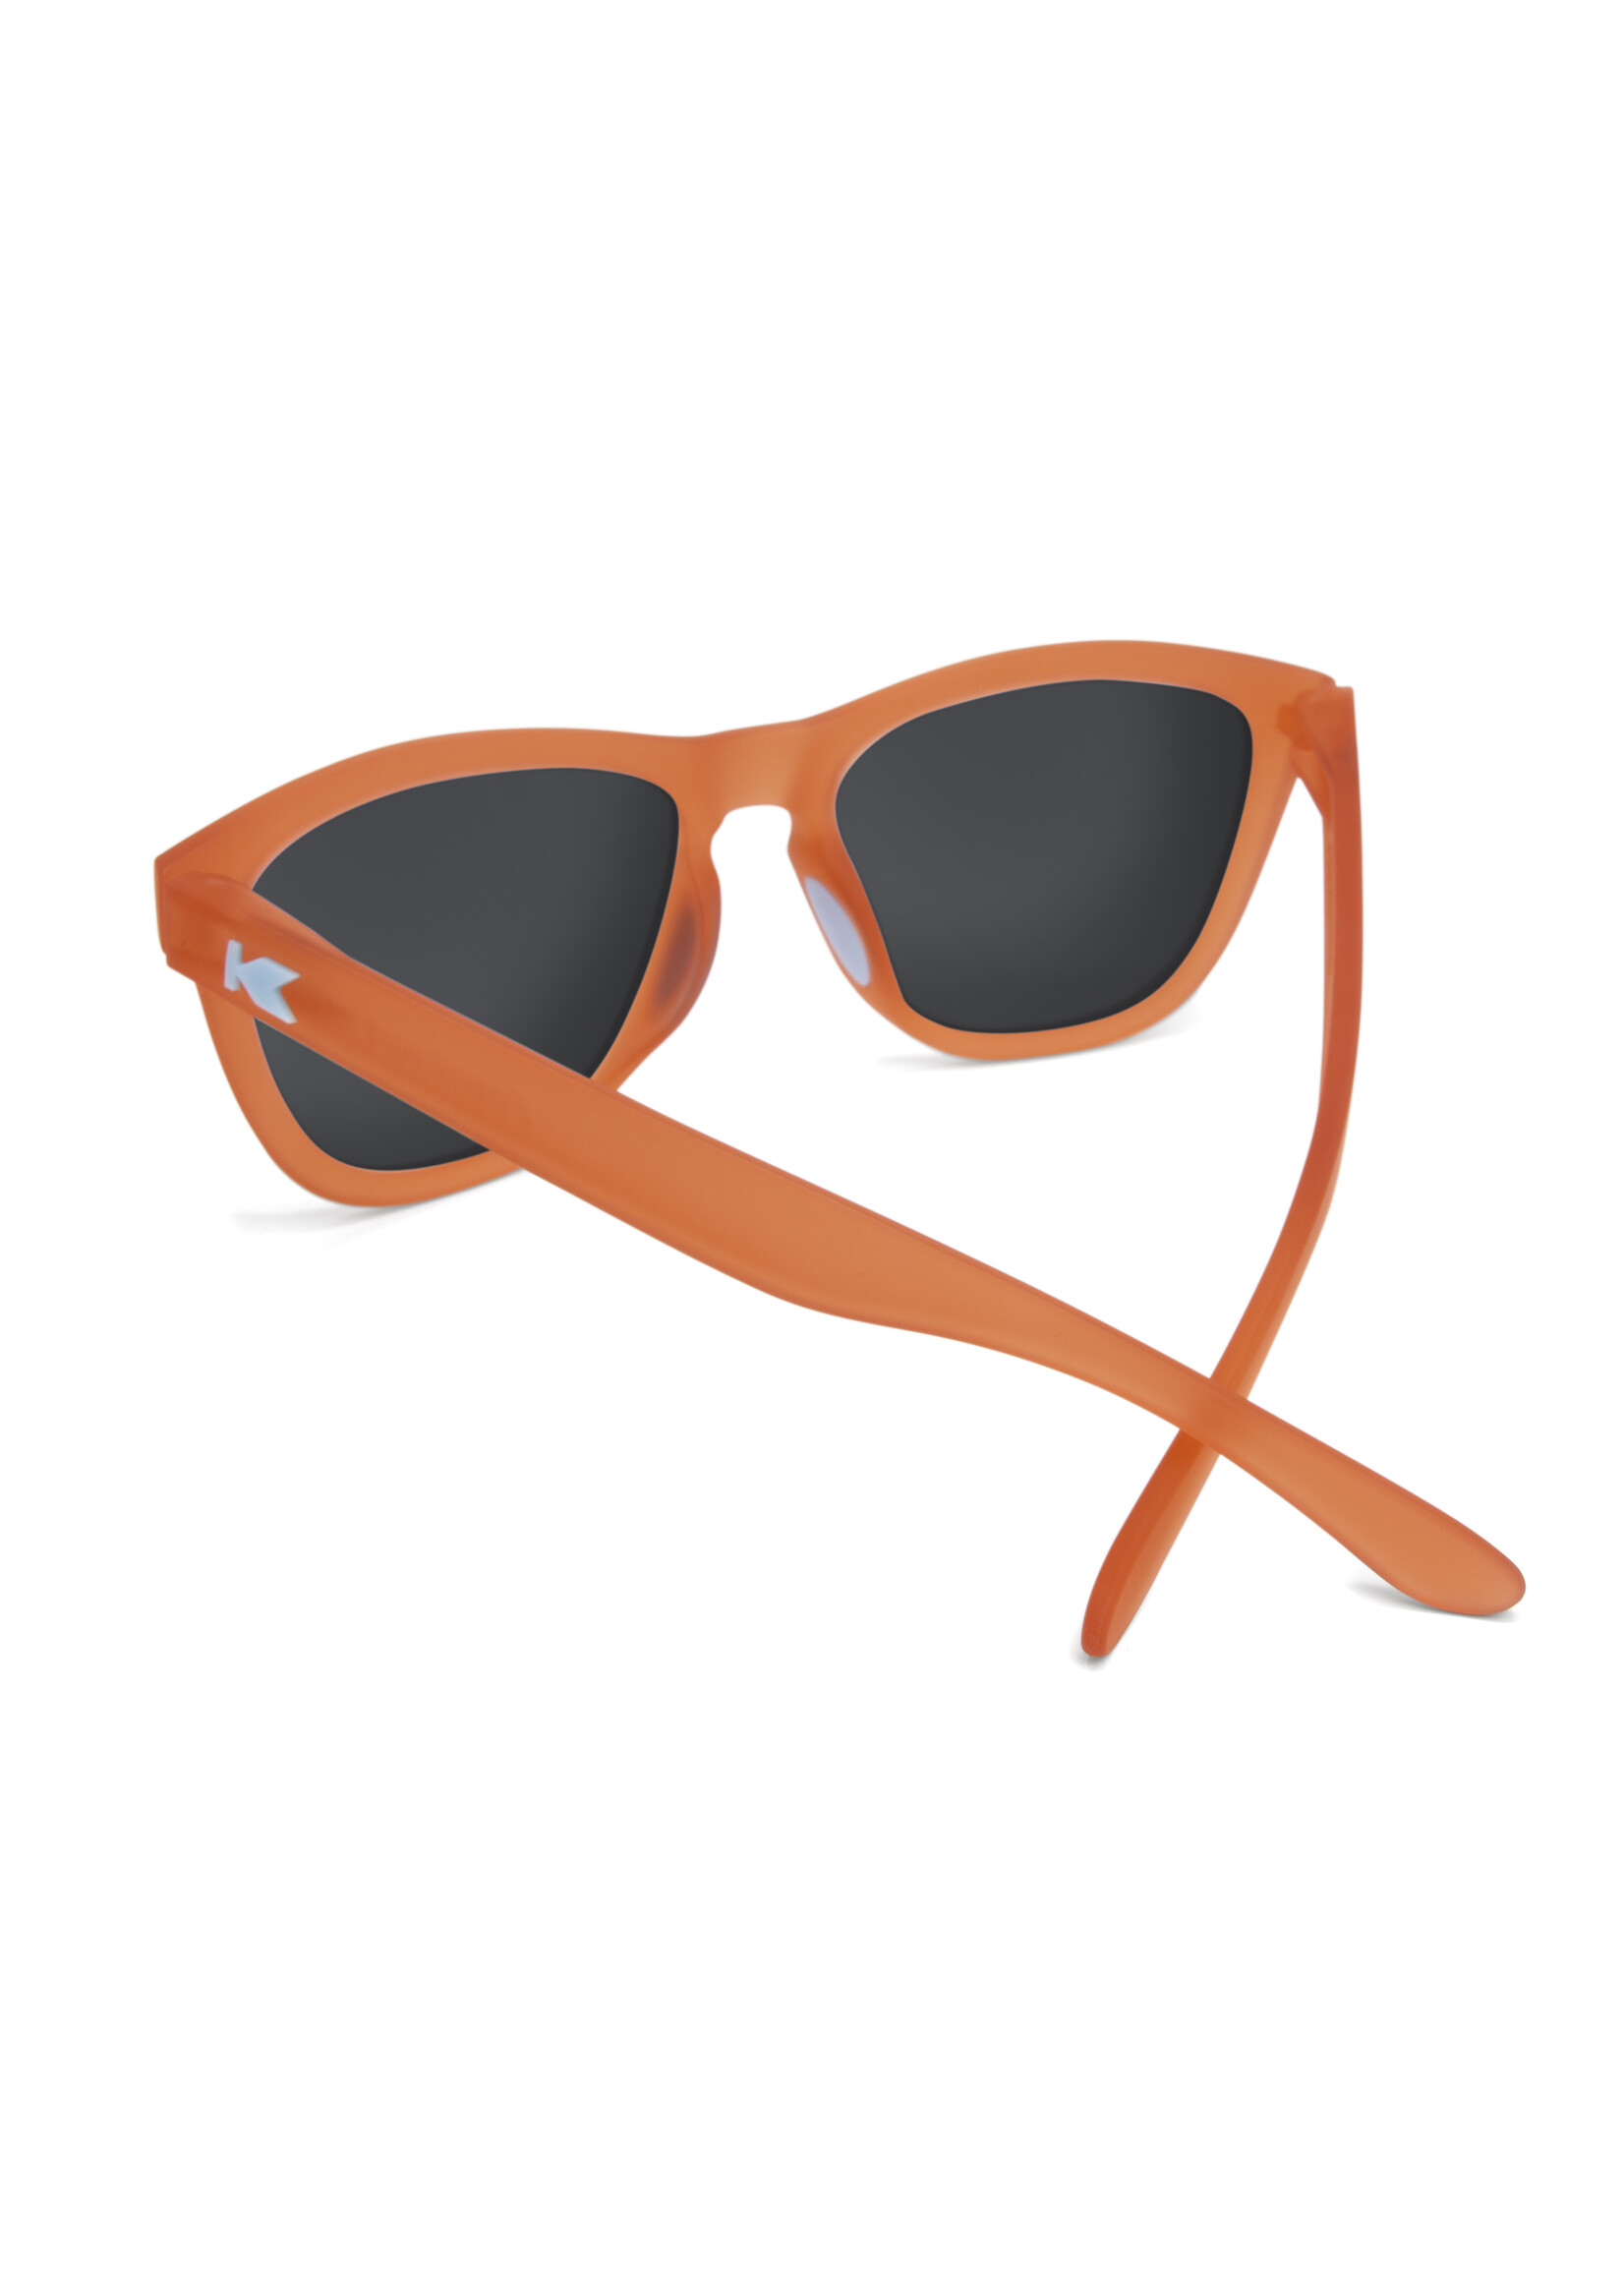 Knockaround Fruit Punch/Aqua Premium Sports Sunglasses